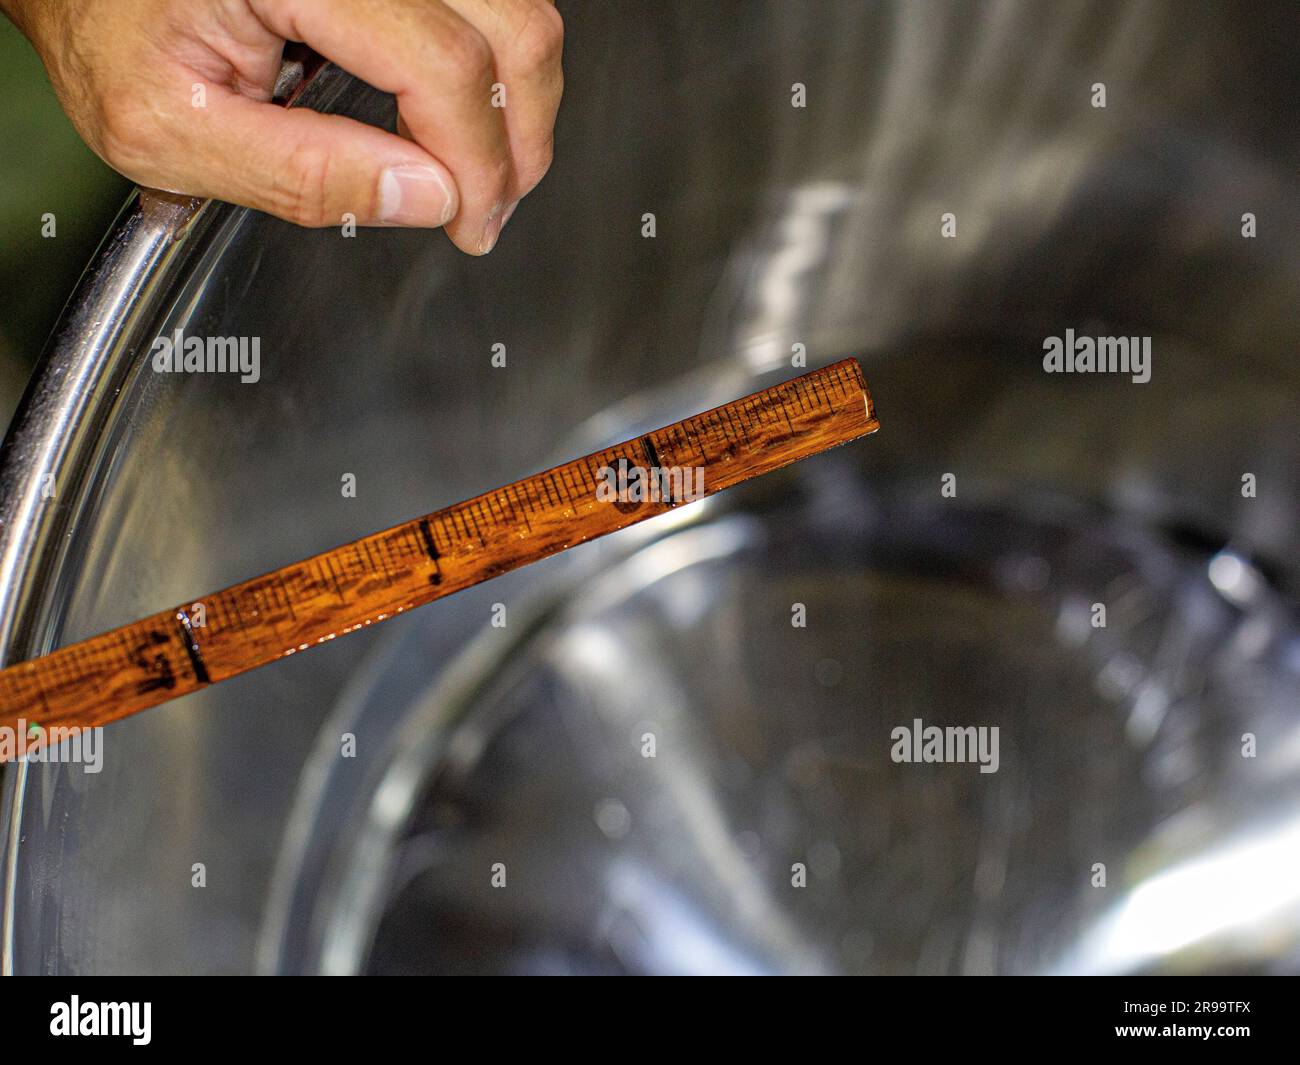 Mano con bastoncino di legno per diluire il sake con acqua, per regolare il livello di alcol. Akashi, prefettura di Hyogo, Giappone. Foto Stock